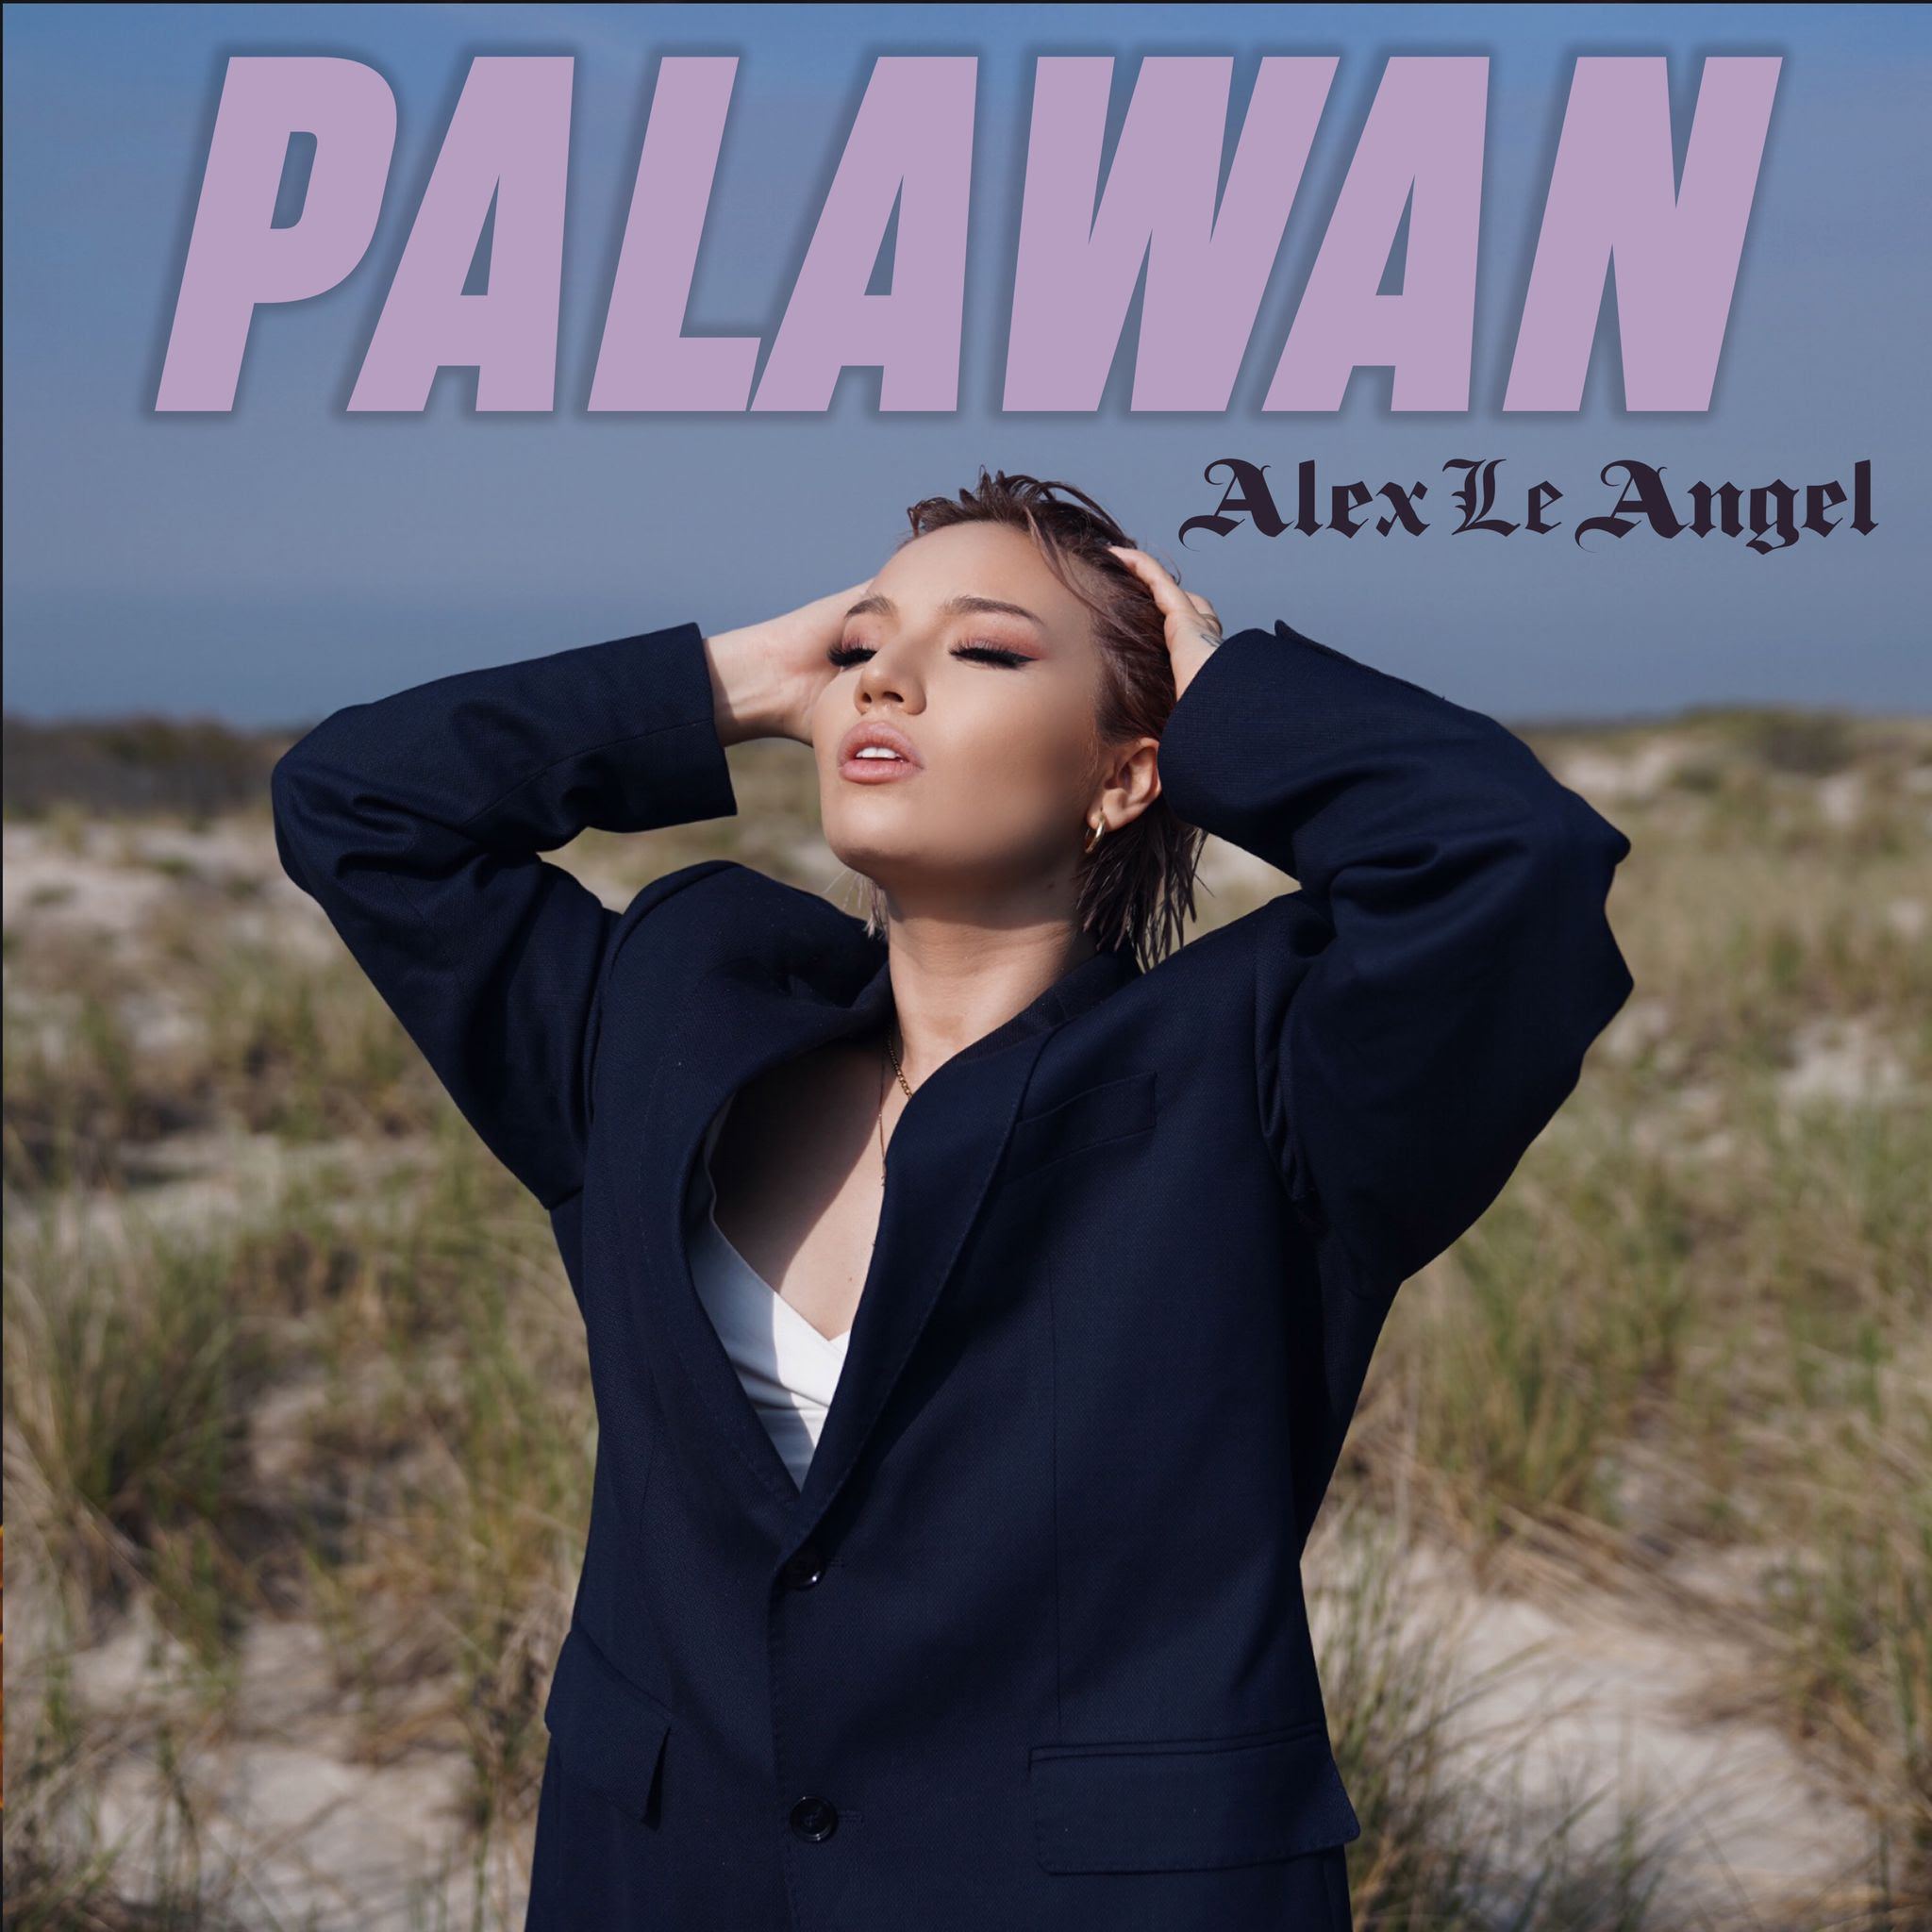 Alex Le Angel invita a liberarse en Palawan con su nuevo videoclip